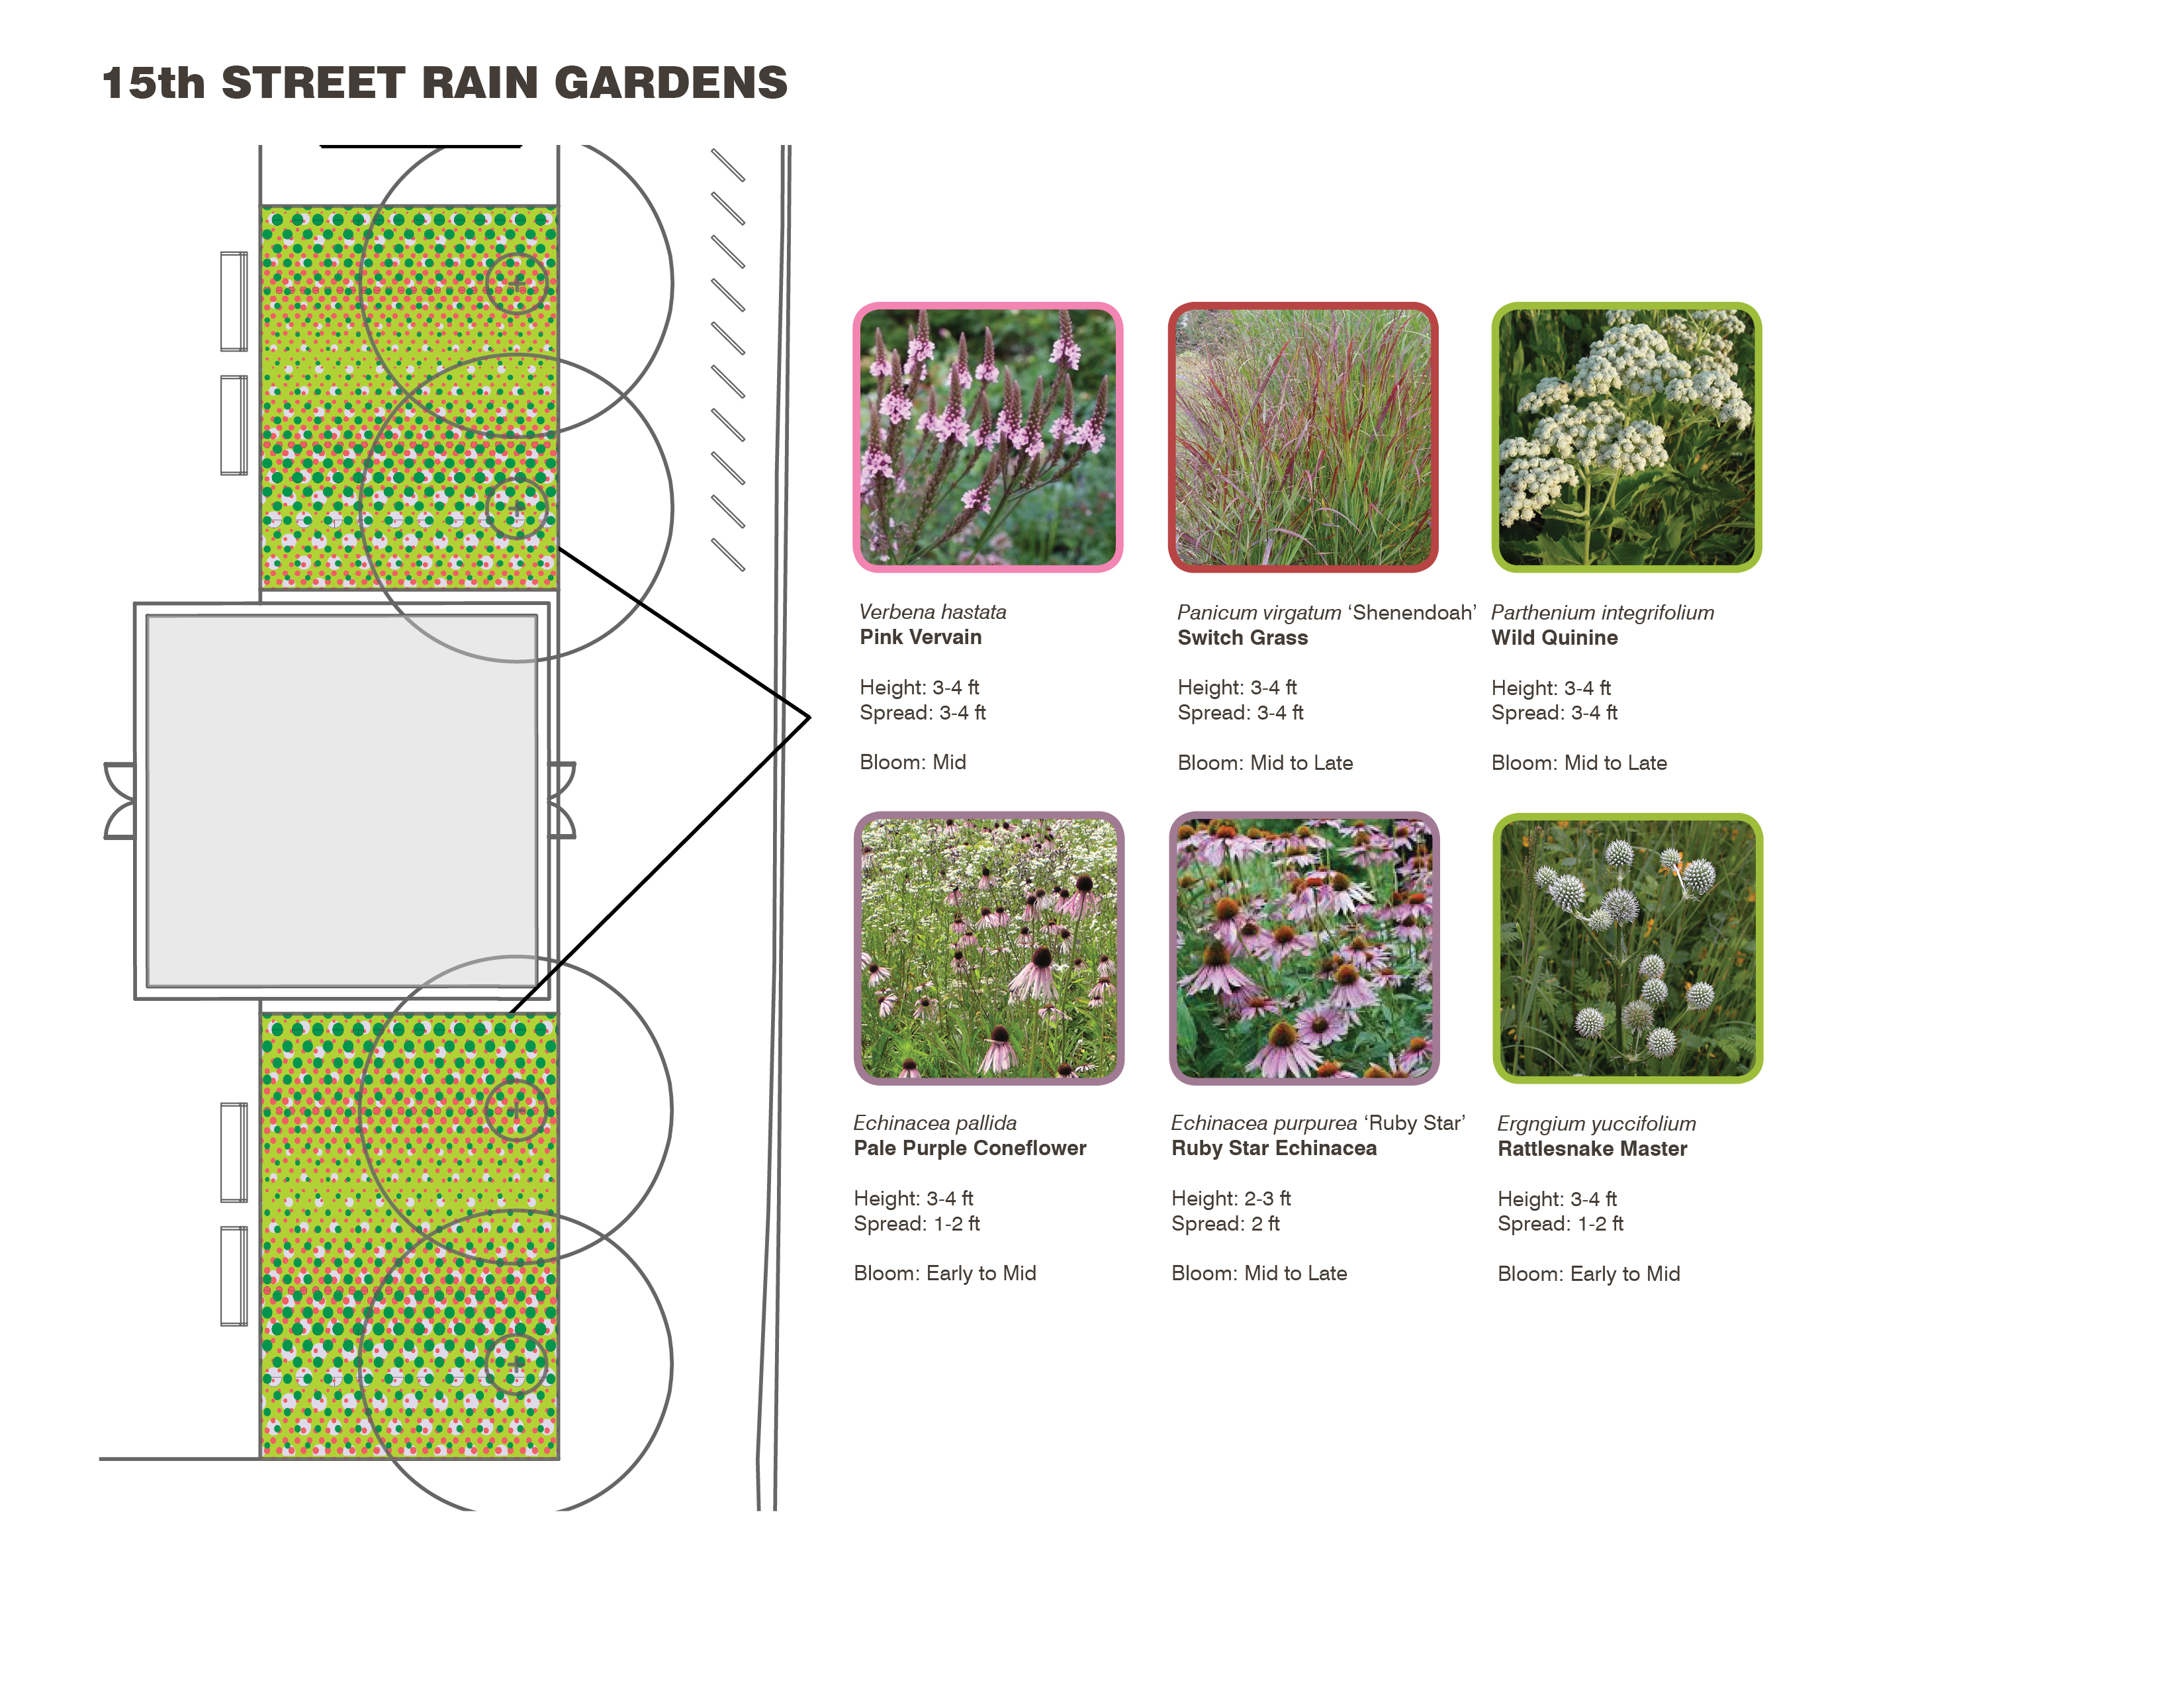 Rain Garden planting plan of LOVE Park / JFK Plaza, October 2015 | Hargreaves